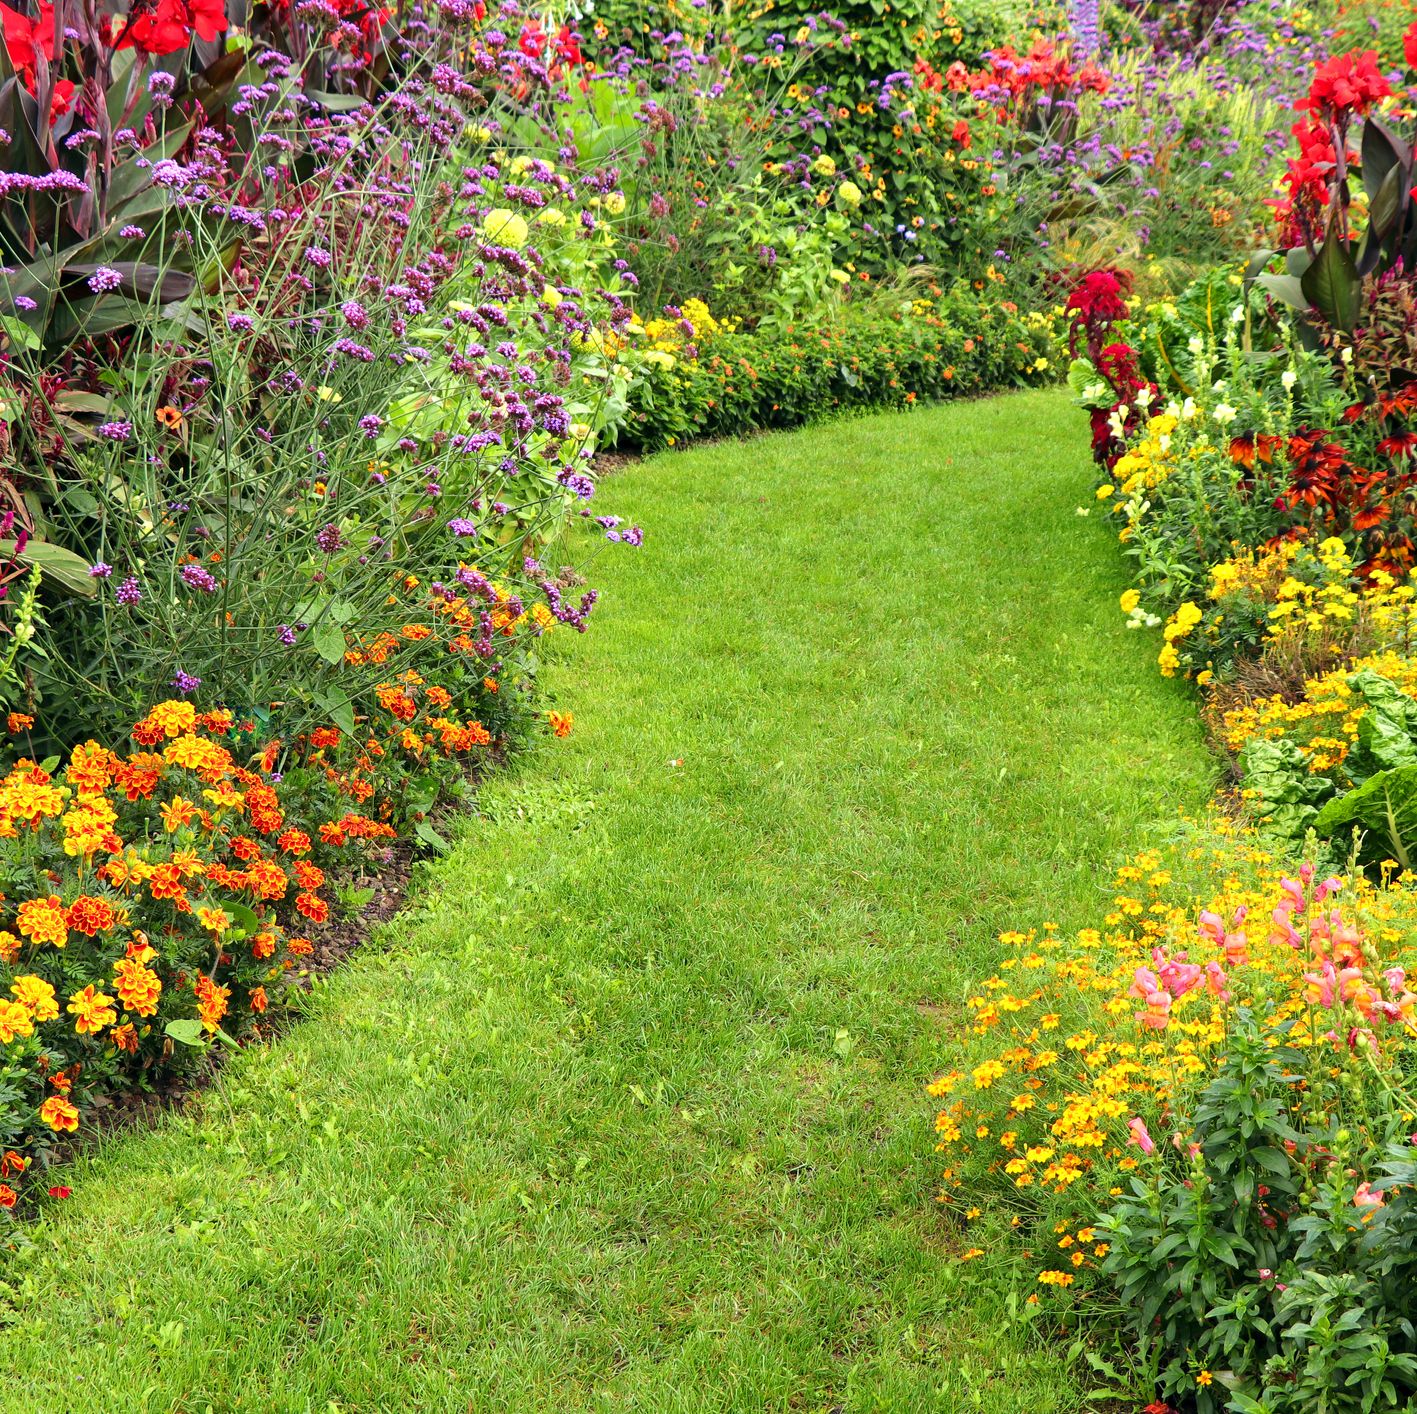 garden border template